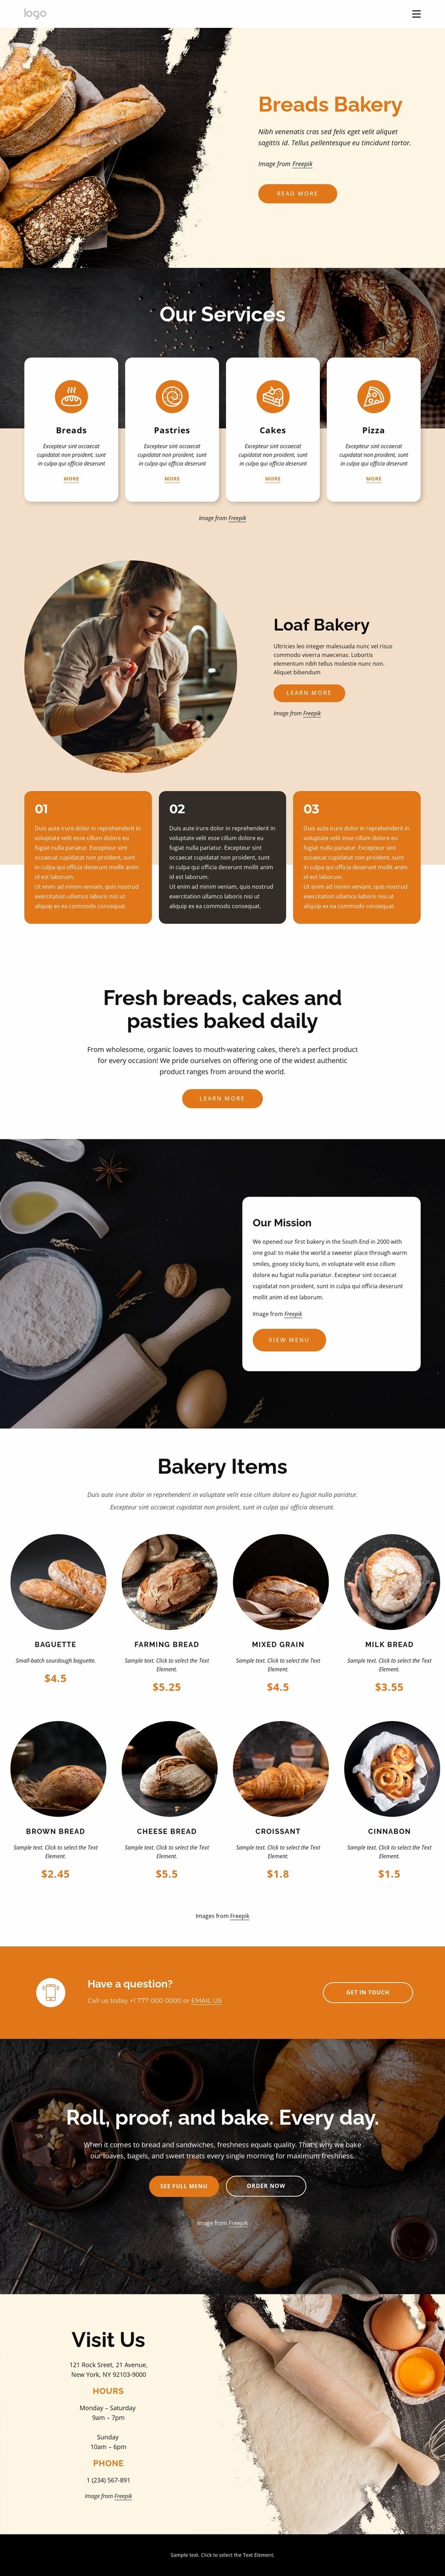 Breads bakery Website Design